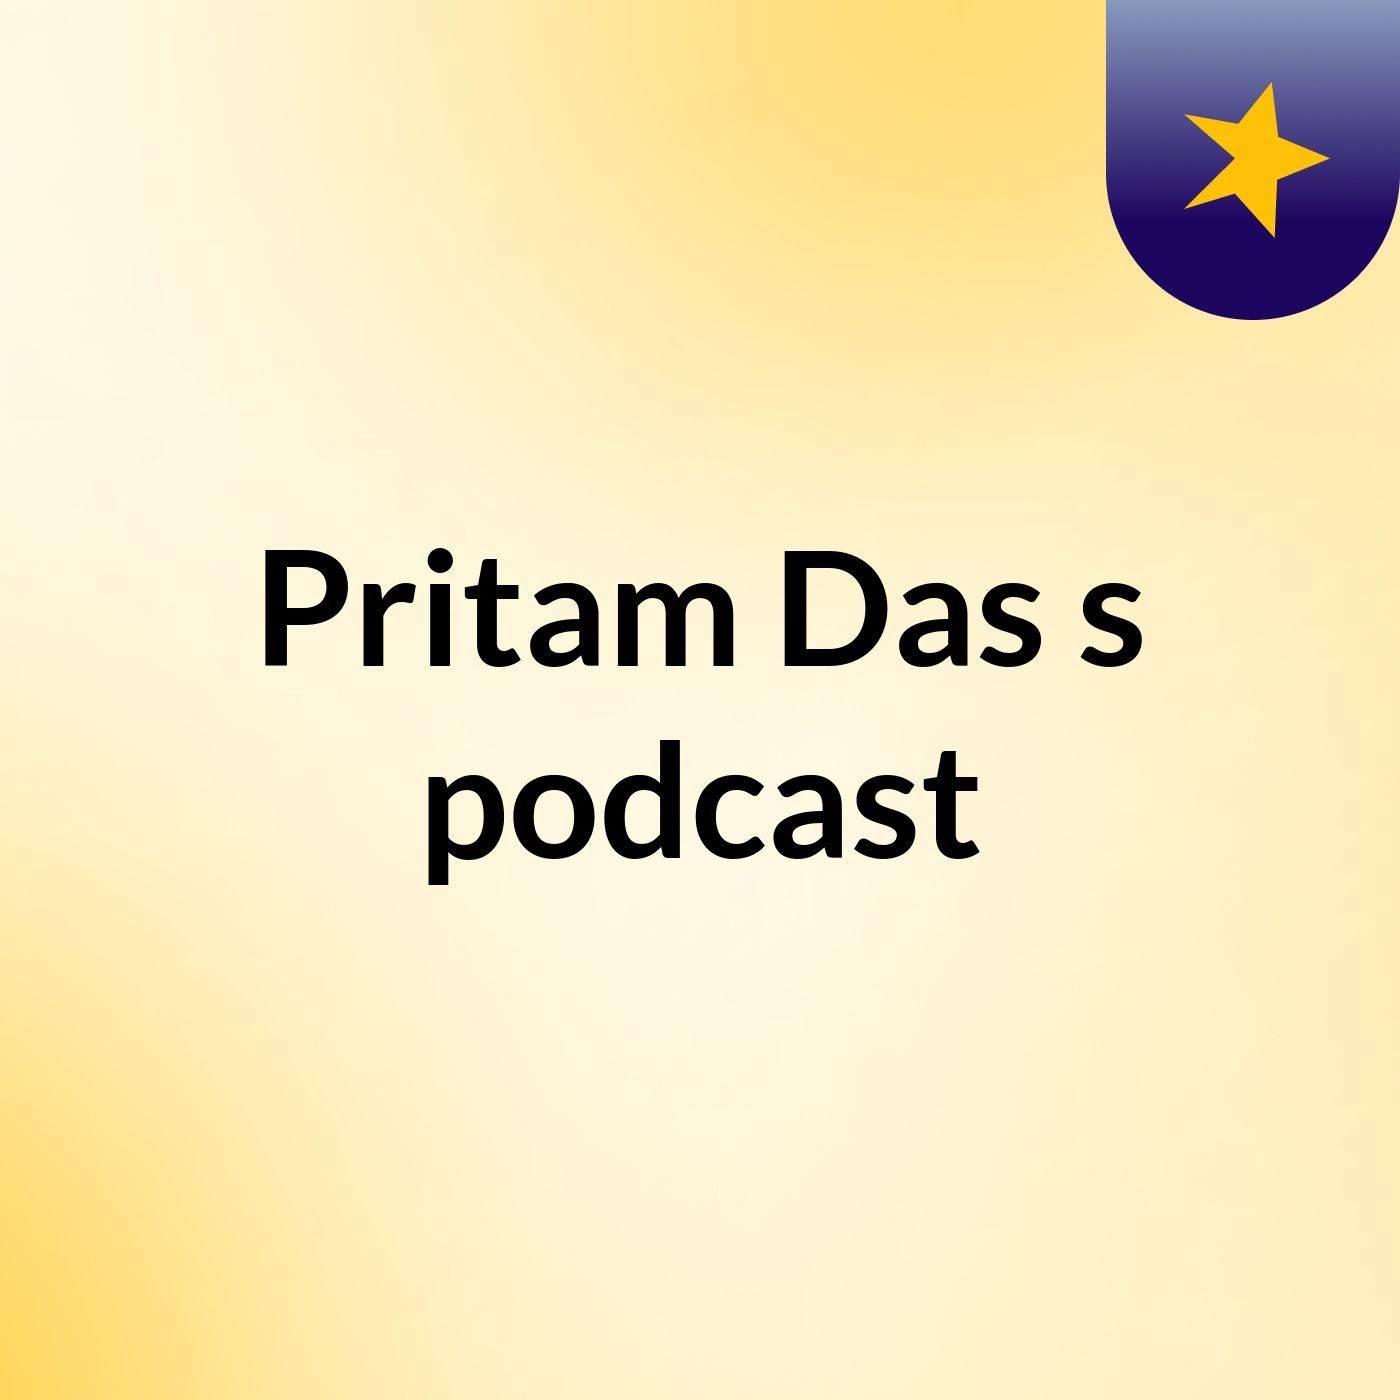 Pritam Das's podcast